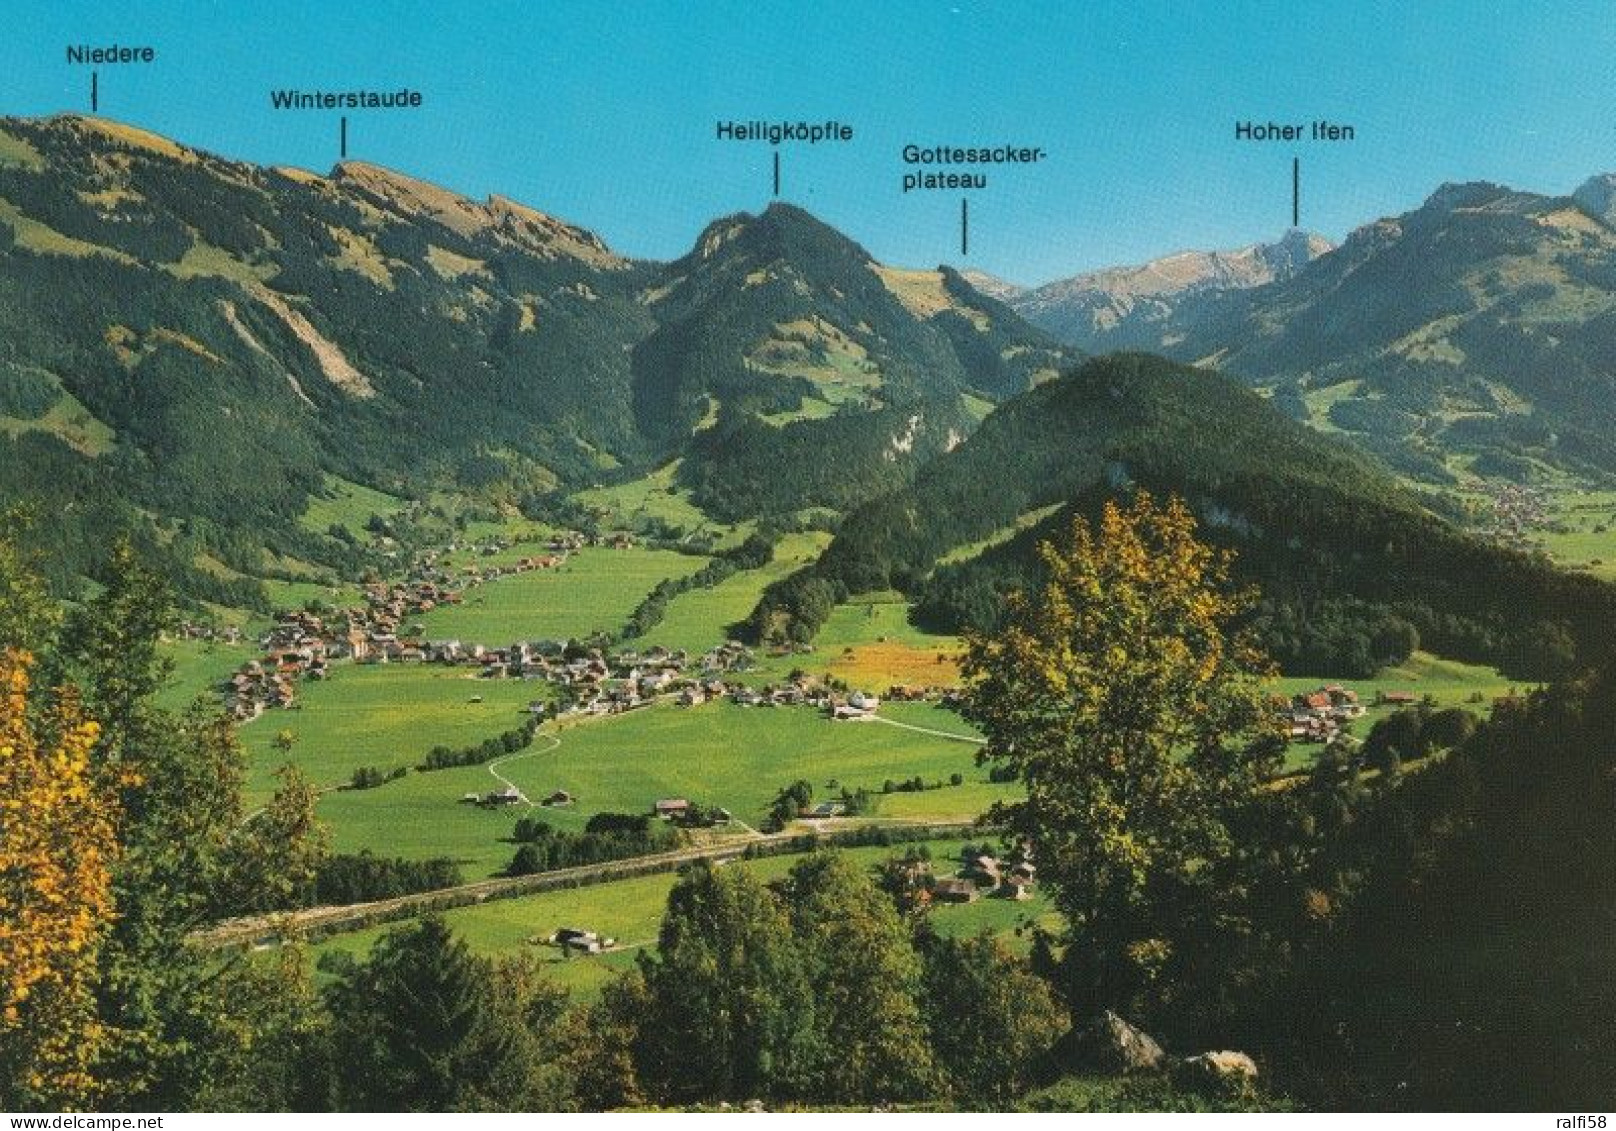 5 AK Österreich / Vorarlberg * Blick Auf Bezau - Die Gemeinde Ist Hauptort Des Bregenzerwalds - 5 Luftbildaufnahmen * - Bregenzerwaldorte